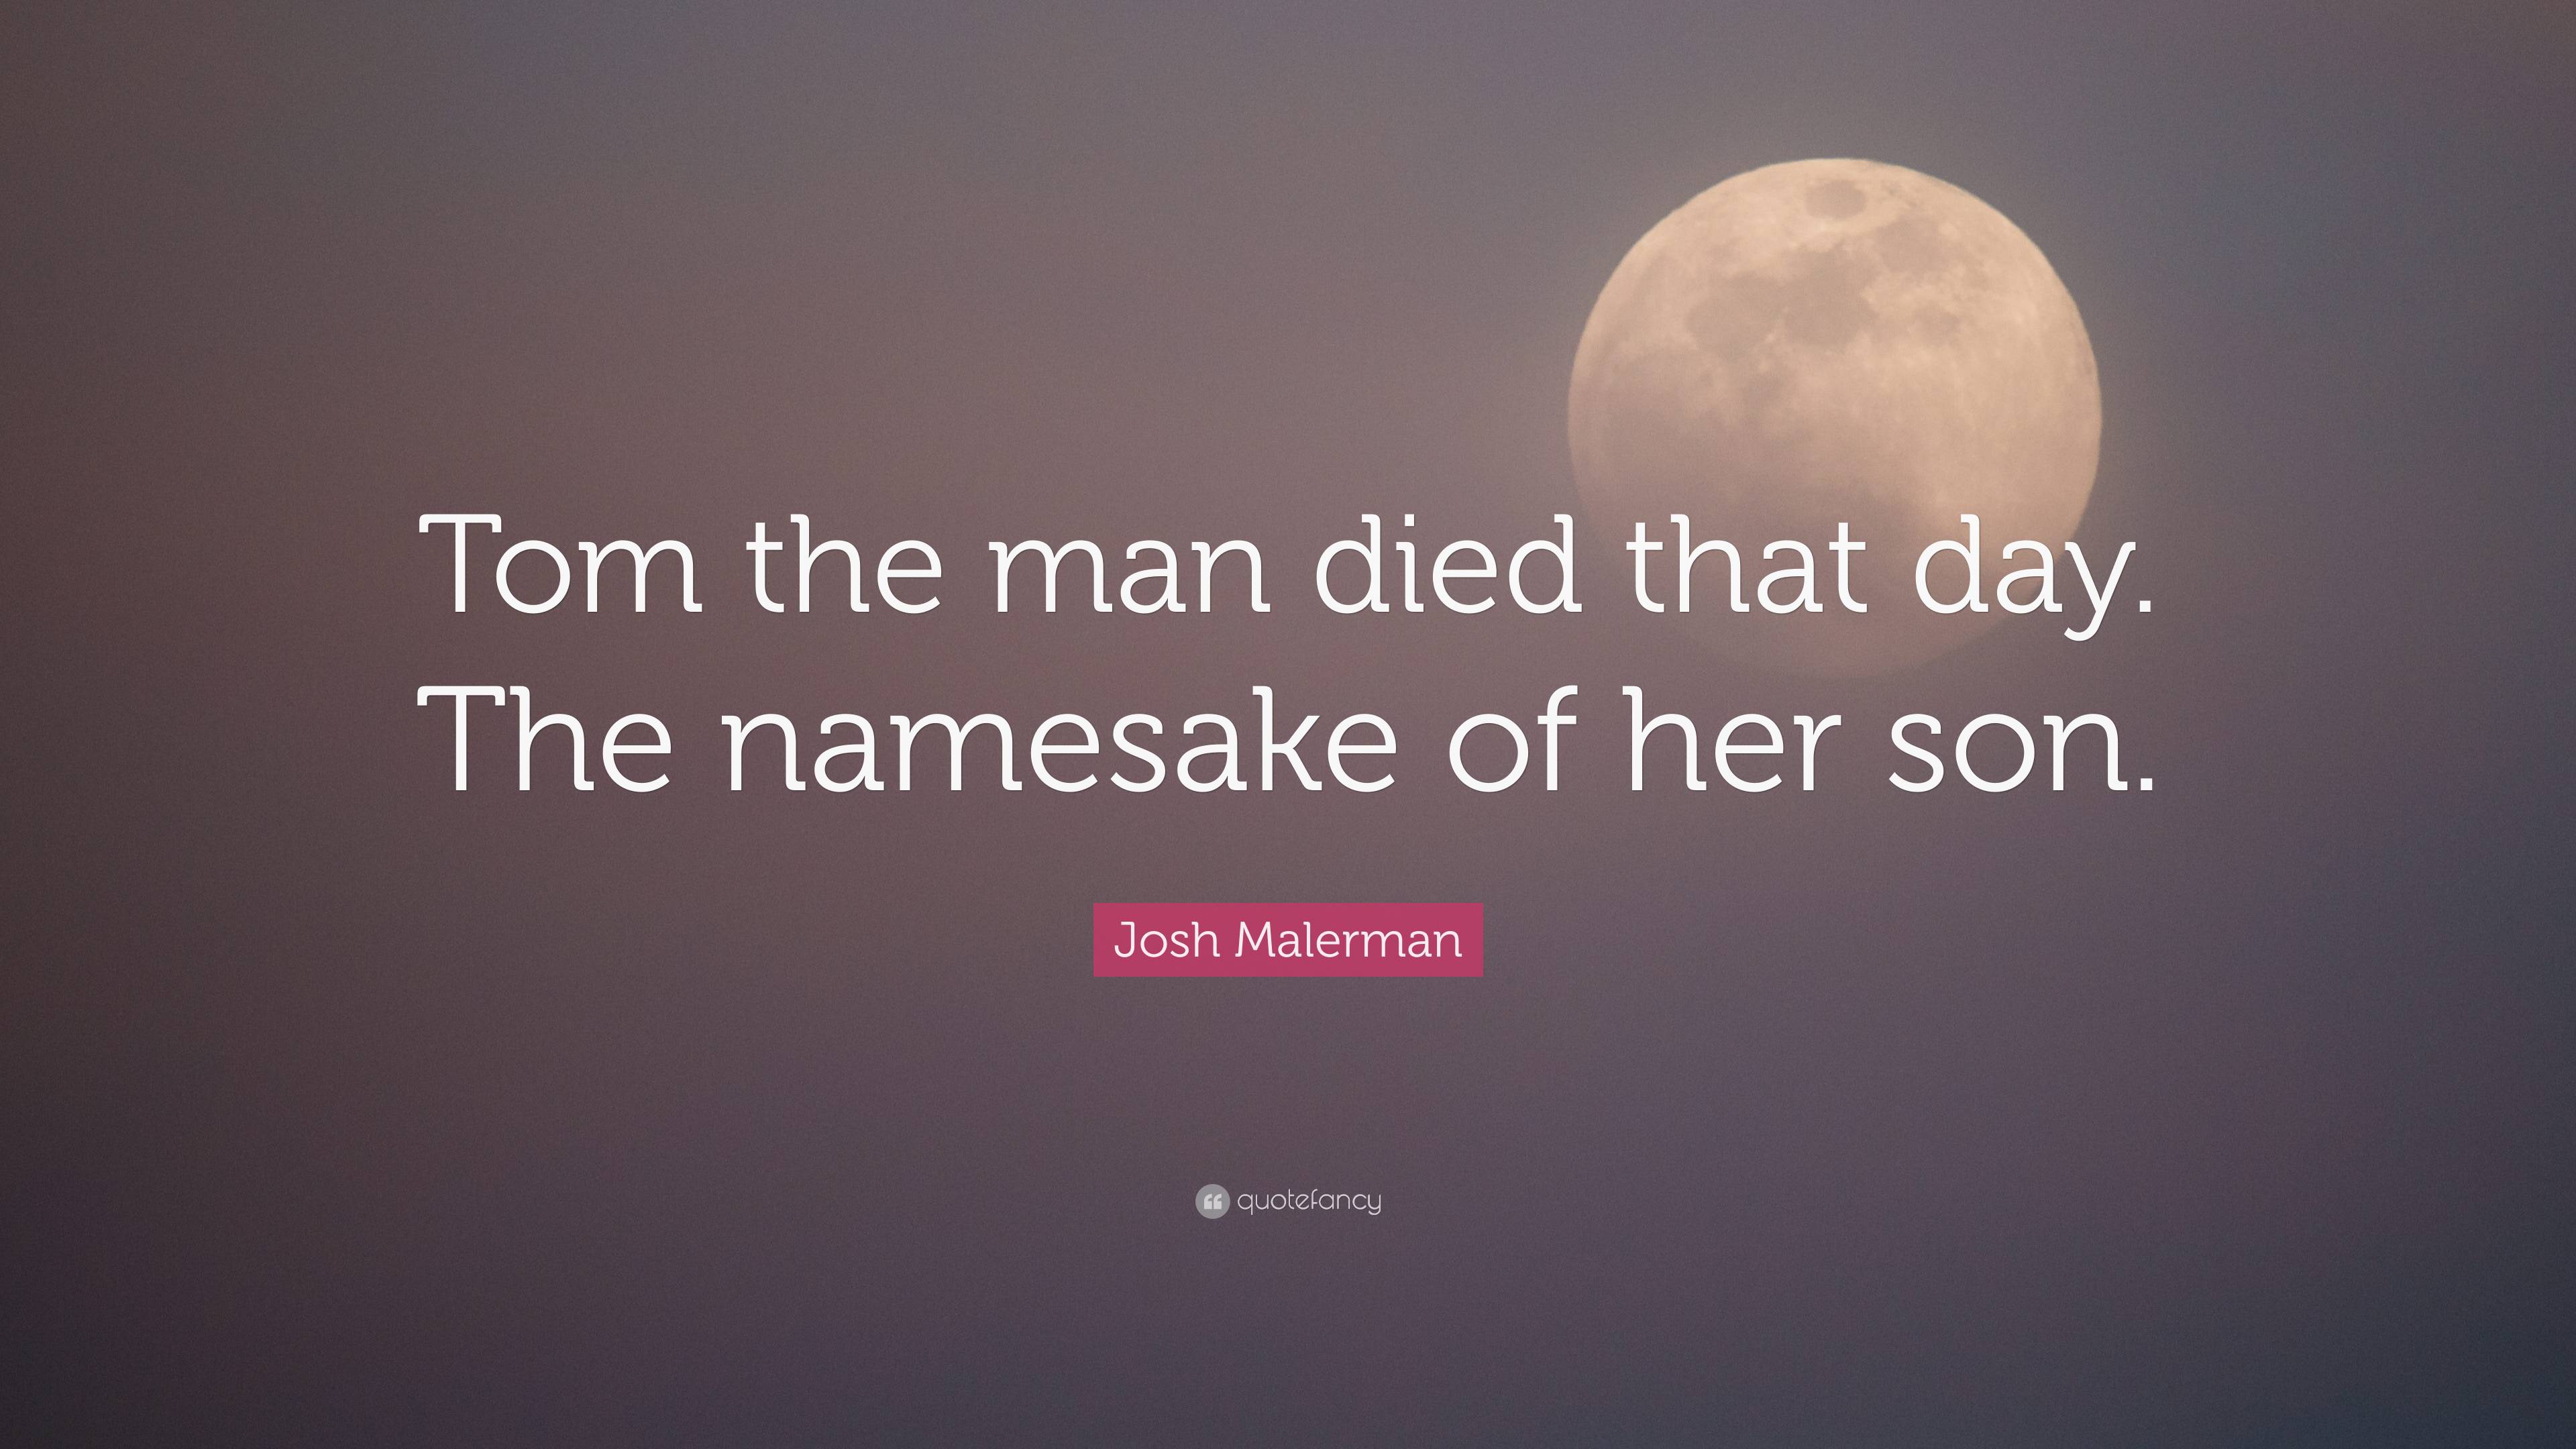 Teoretisk Gå vandreture tredobbelt Josh Malerman Quote: “Tom the man died that day. The namesake of her son.”